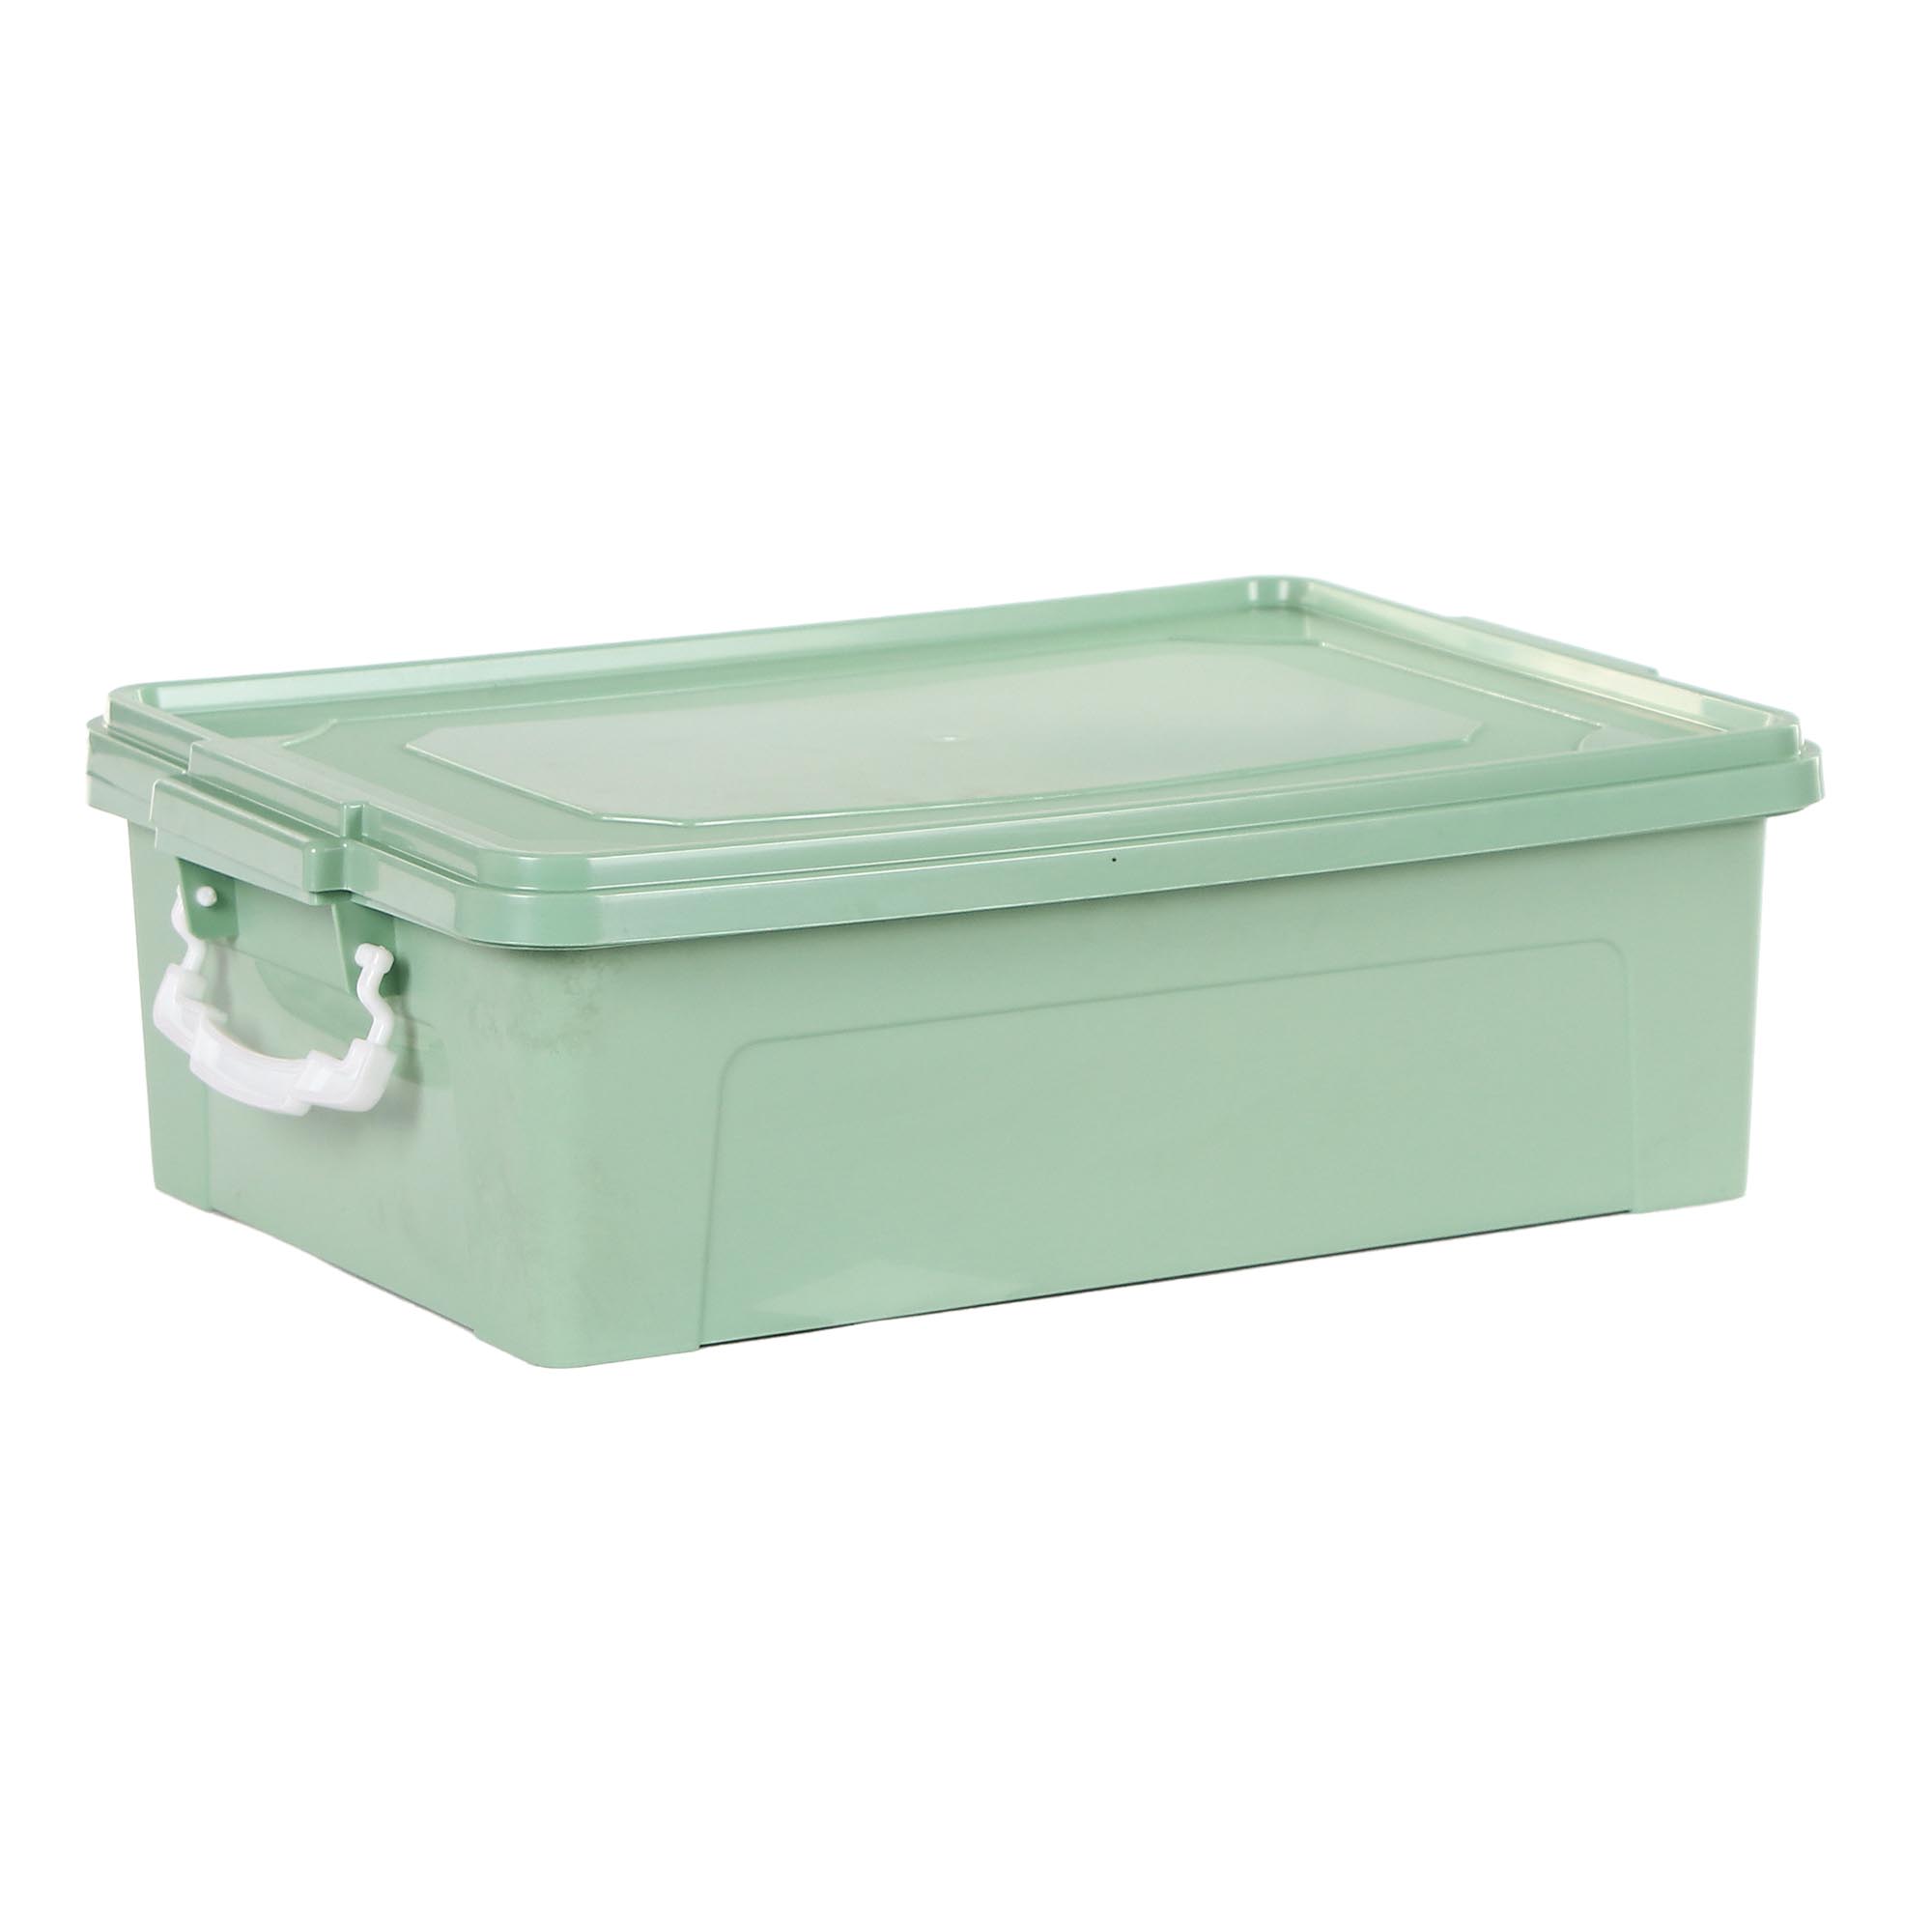 Контейнер Stars Plast для хранения 10 л, зеленый контейнер для хранения детского питания 330 мл розовый